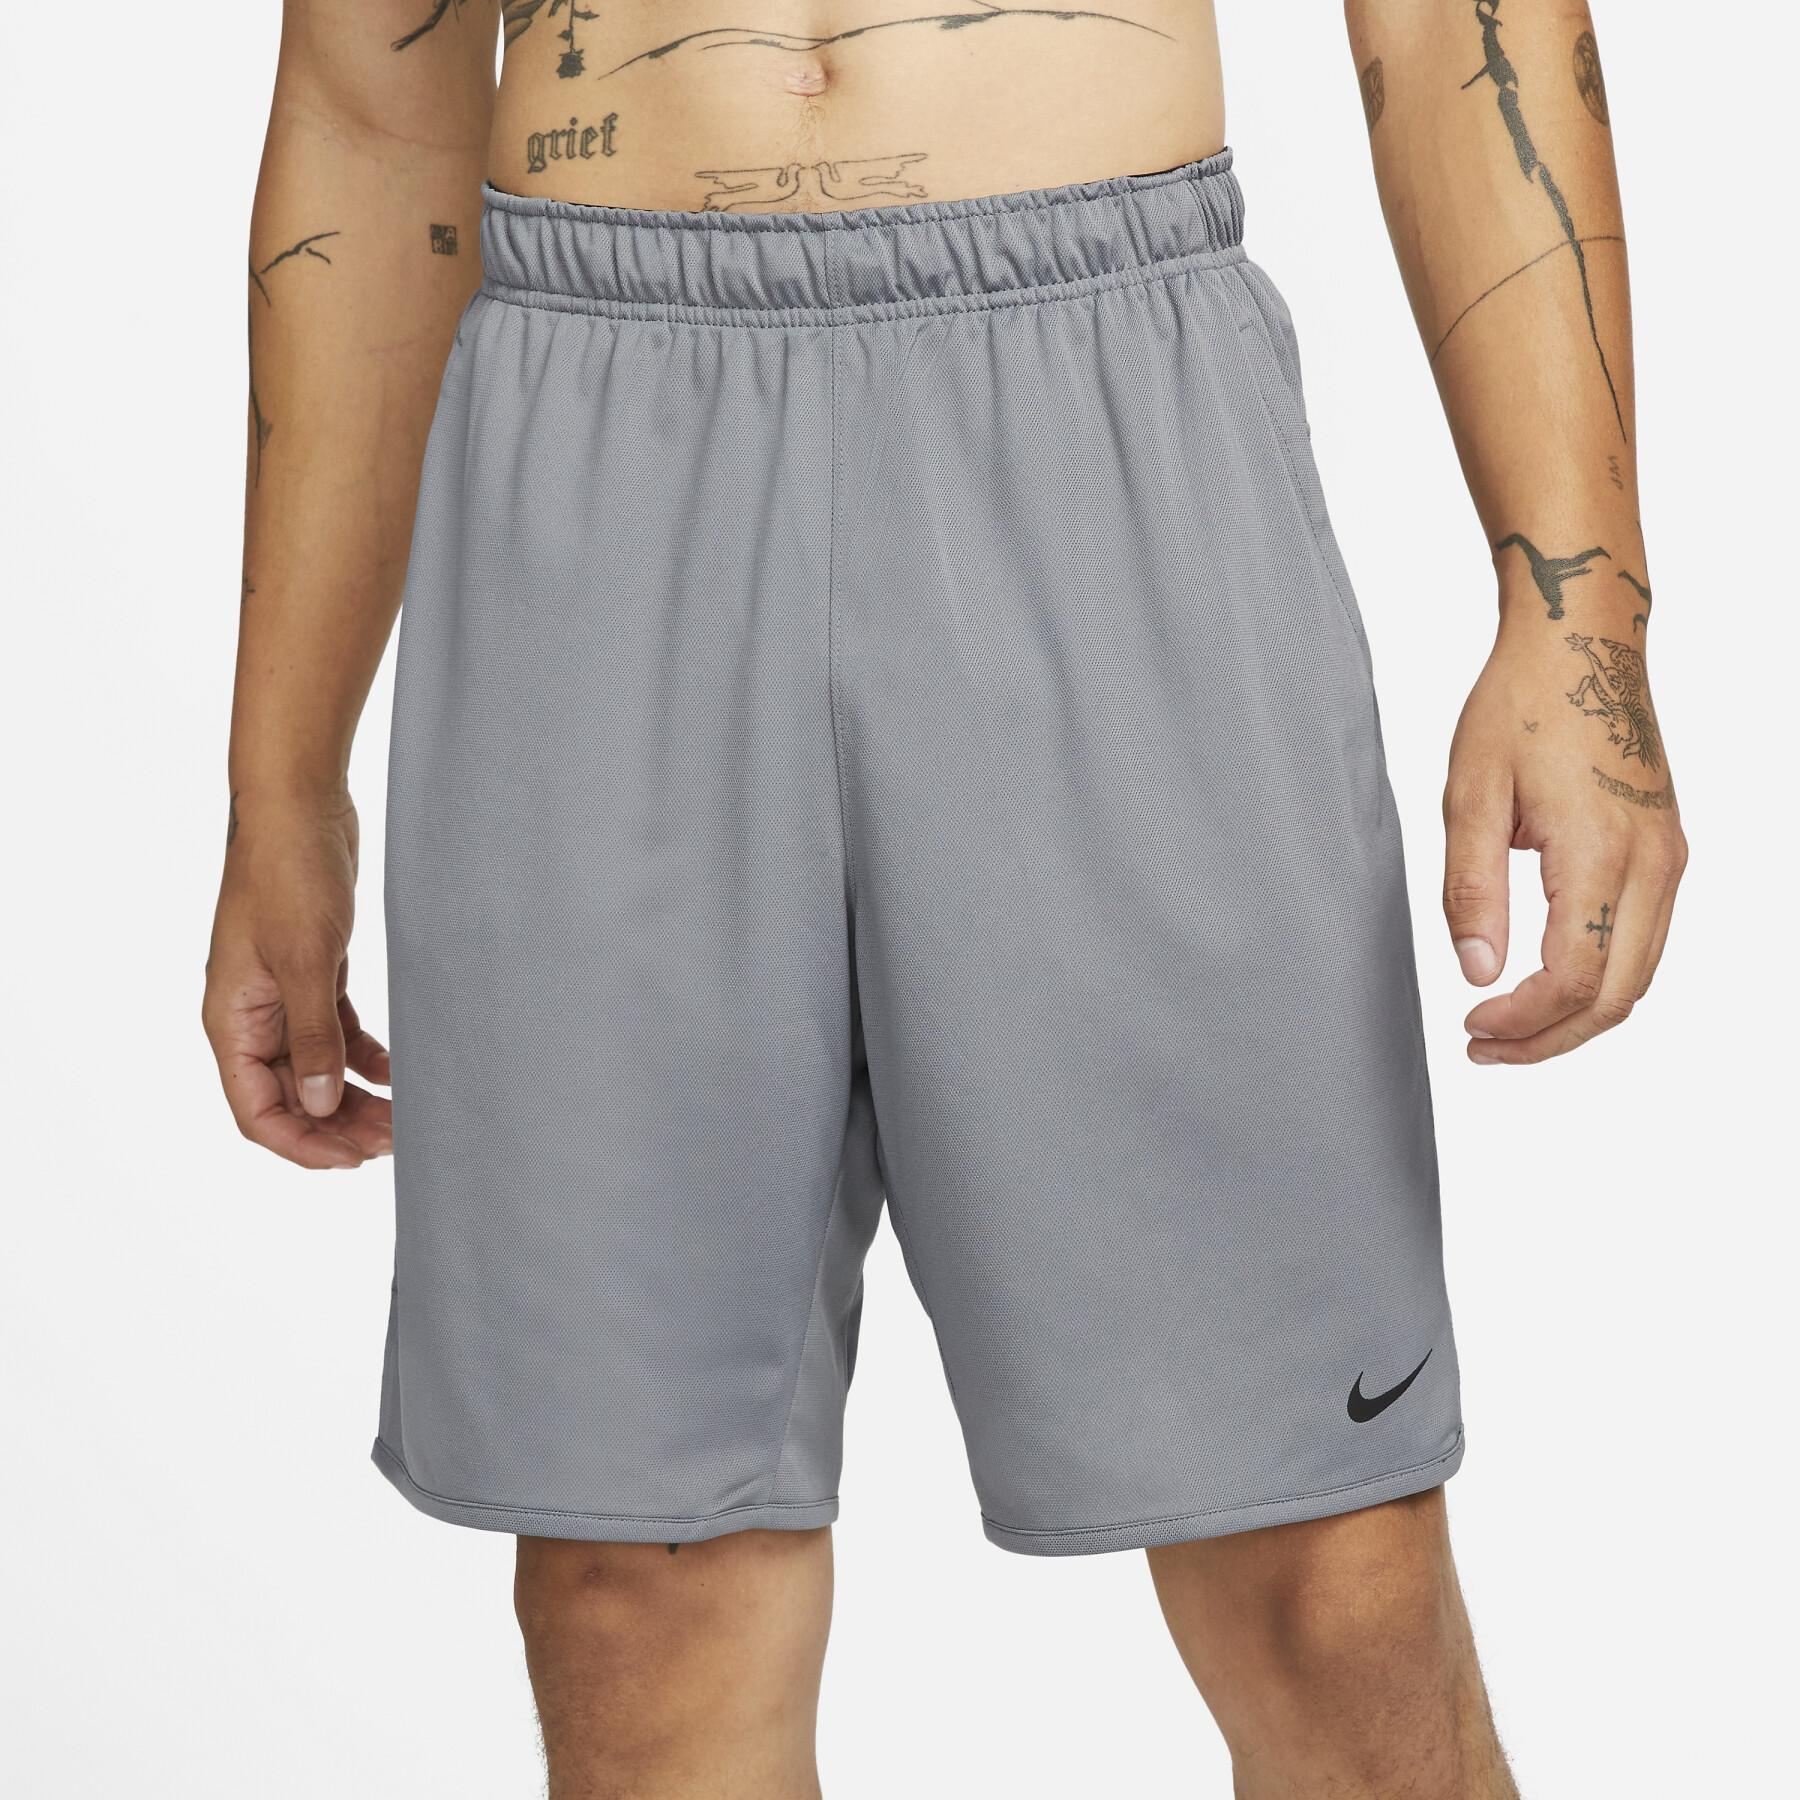 Pantalón corto de malla Nike Dri-FIT Totality 9 " UL